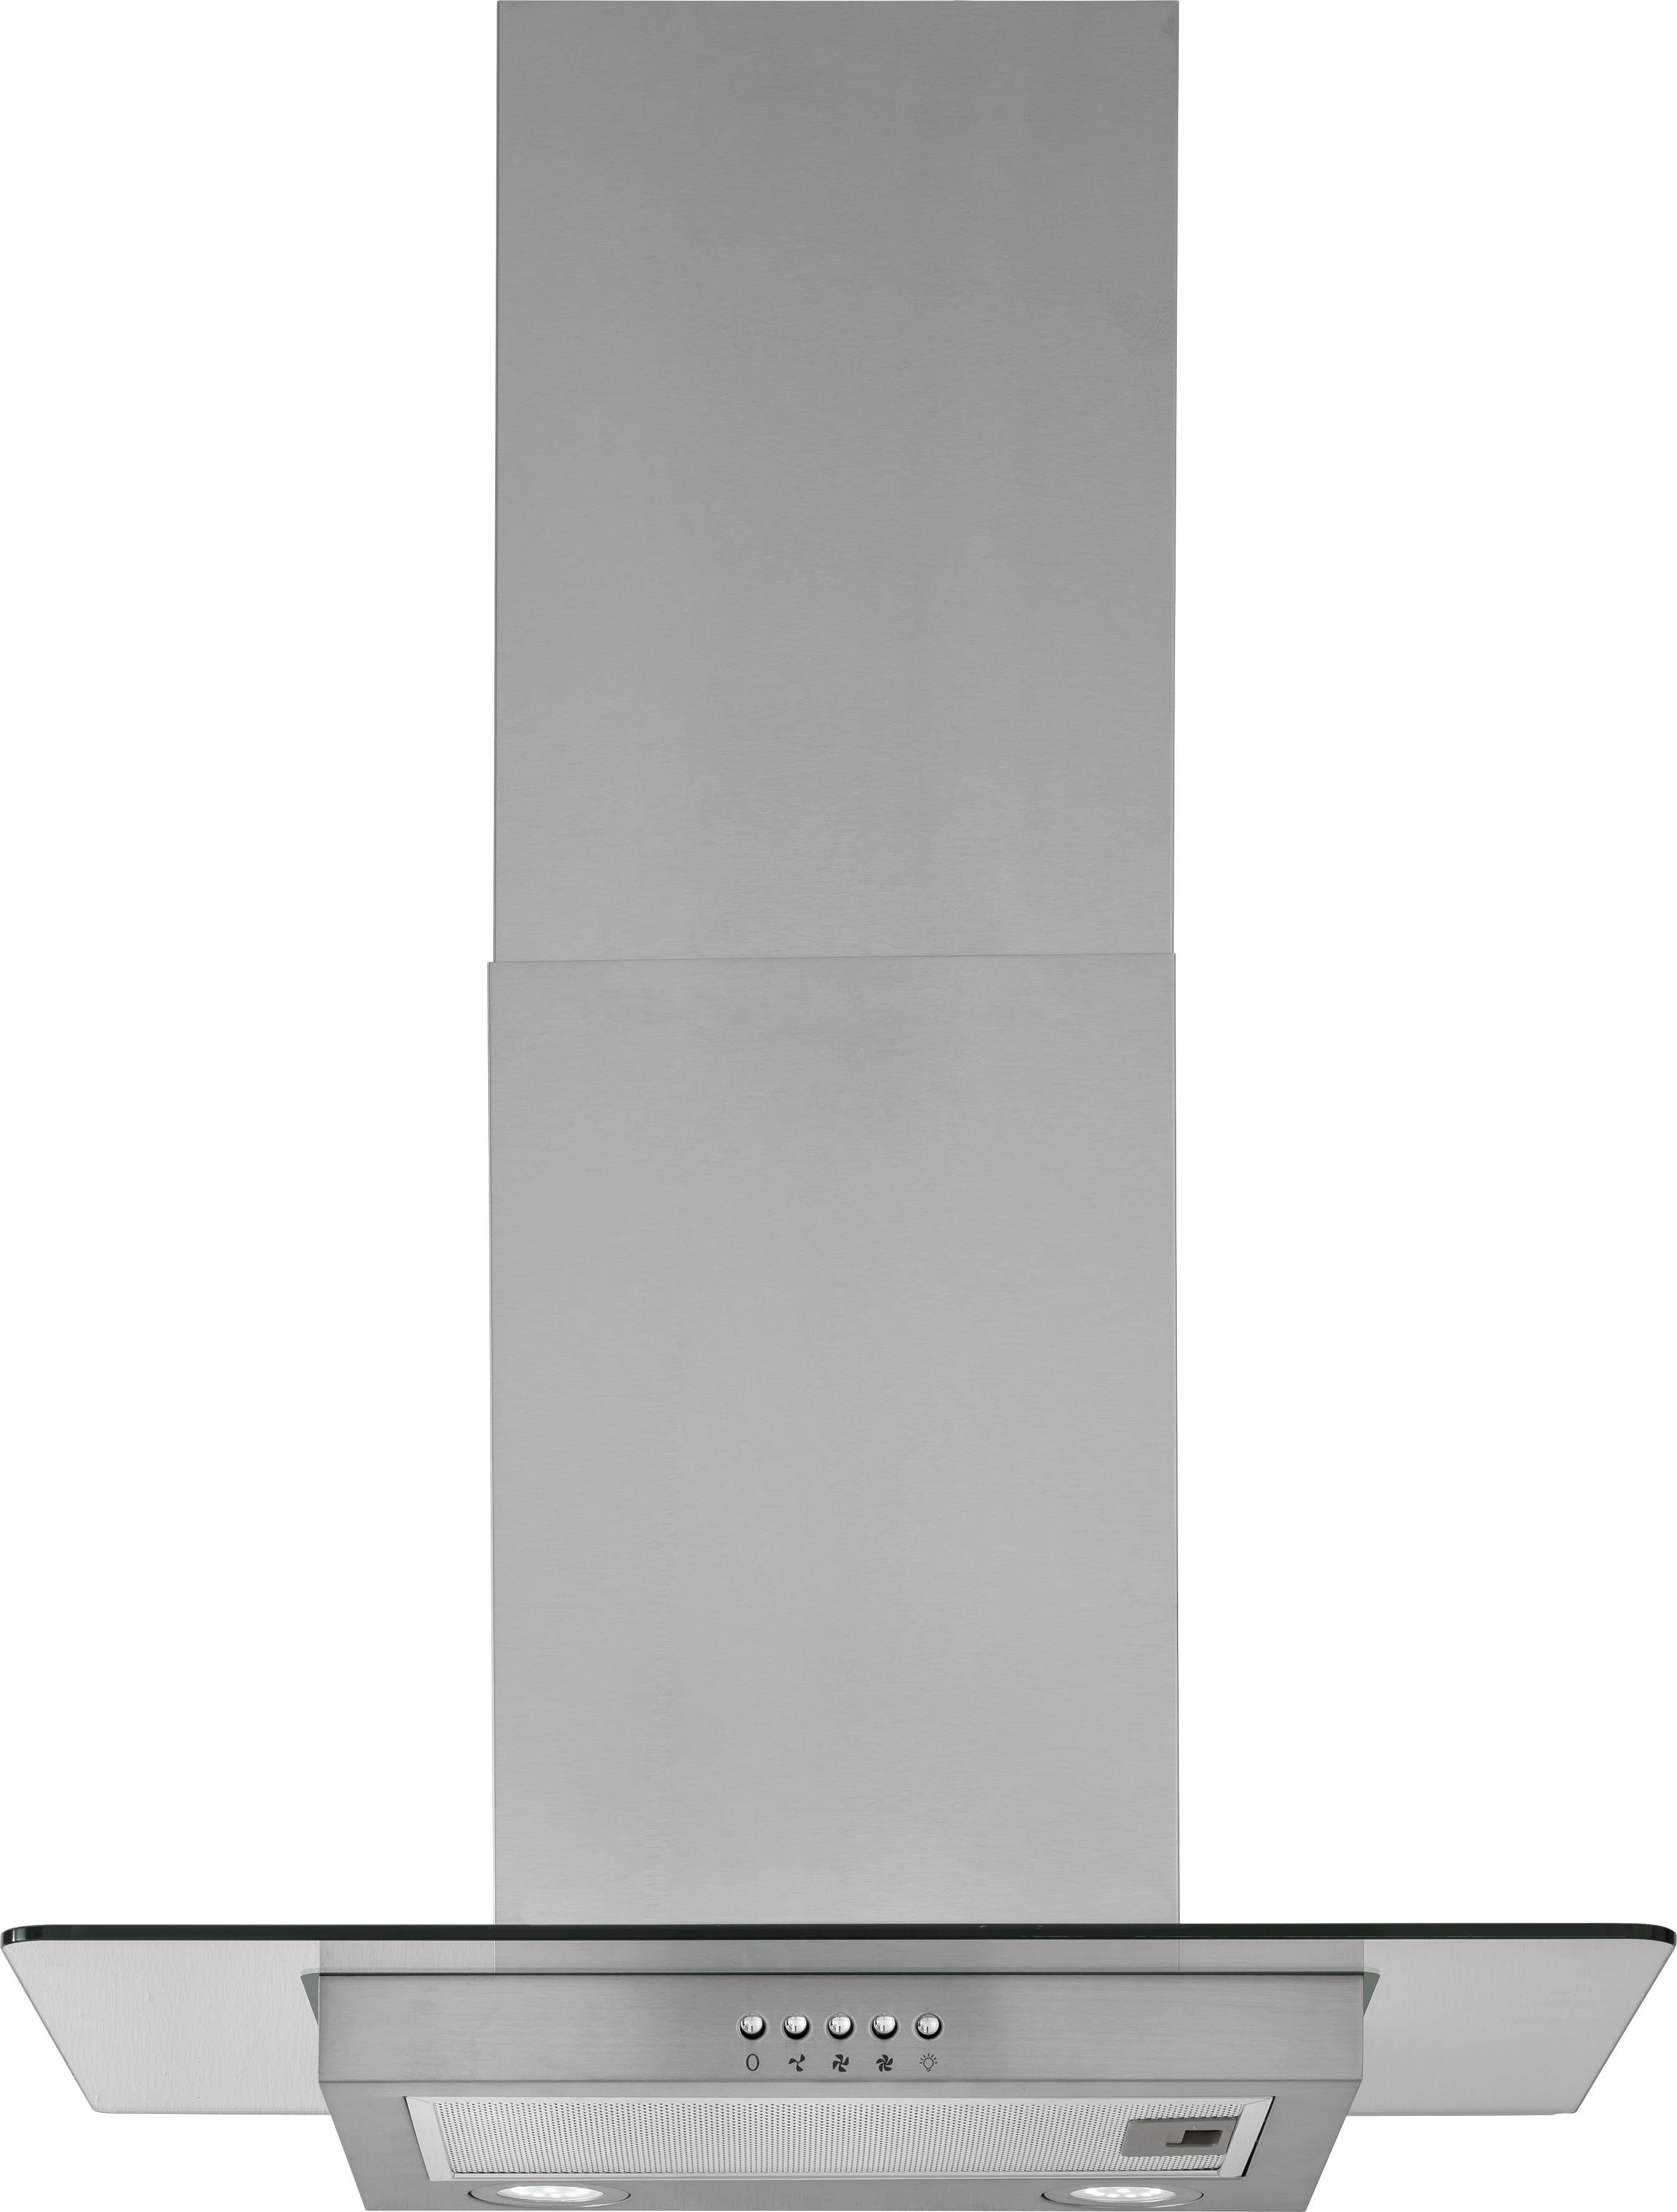 300 HANSEATIC weiß breit, OPTIFIT inklusive seidenglanz weiß cm Küchenzeile Iver, der Elektrogeräte | Marke